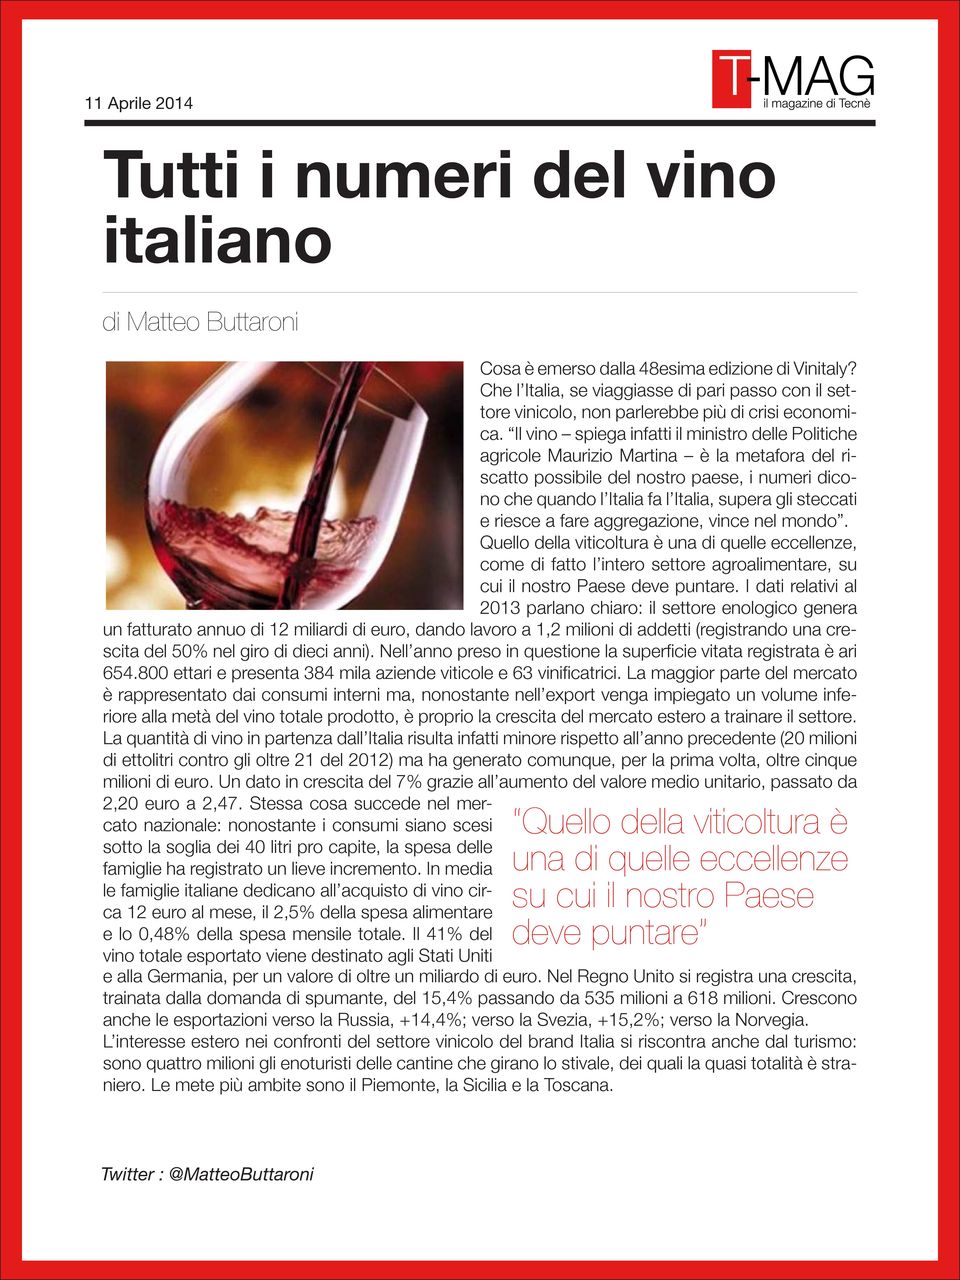 Il vino spiega infatti il ministro delle Politiche agricole Maurizio Martina è la metafora del riscatto possibile del nostro paese, i numeri dicono che quando l Italia fa l Italia, supera gli